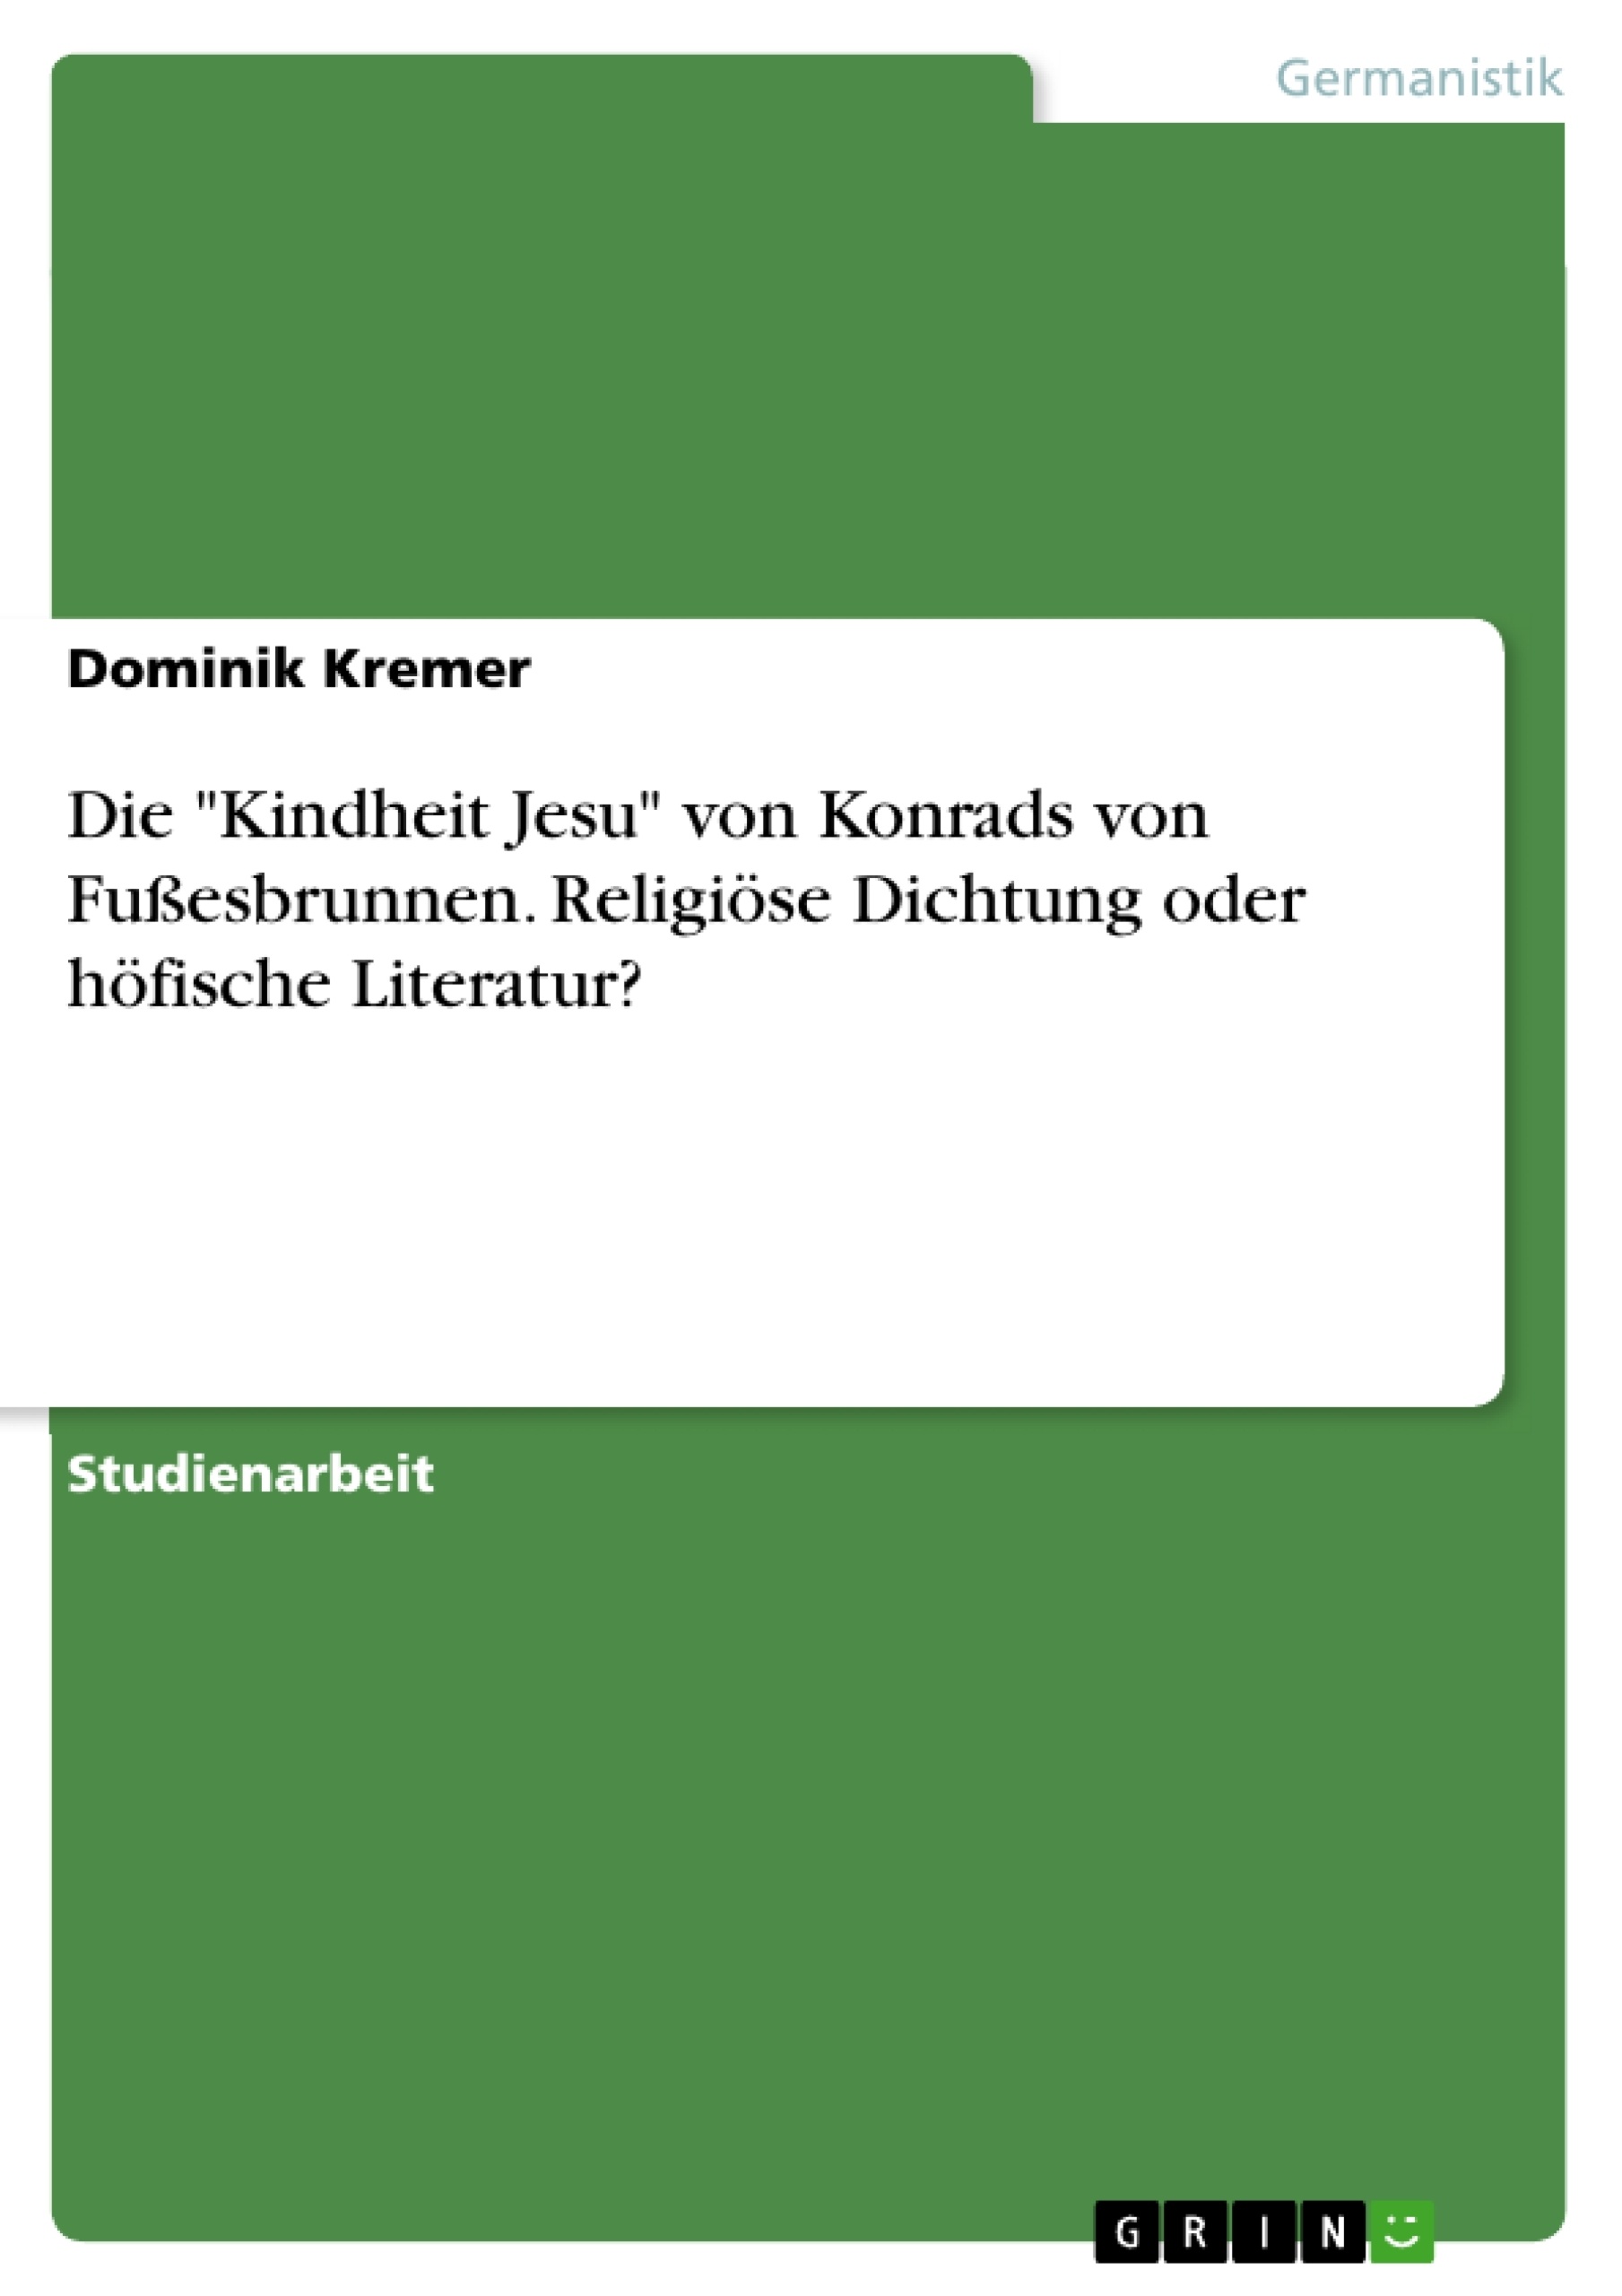 Title: Die "Kindheit Jesu" von Konrads von Fußesbrunnen. Religiöse Dichtung oder höfische Literatur?